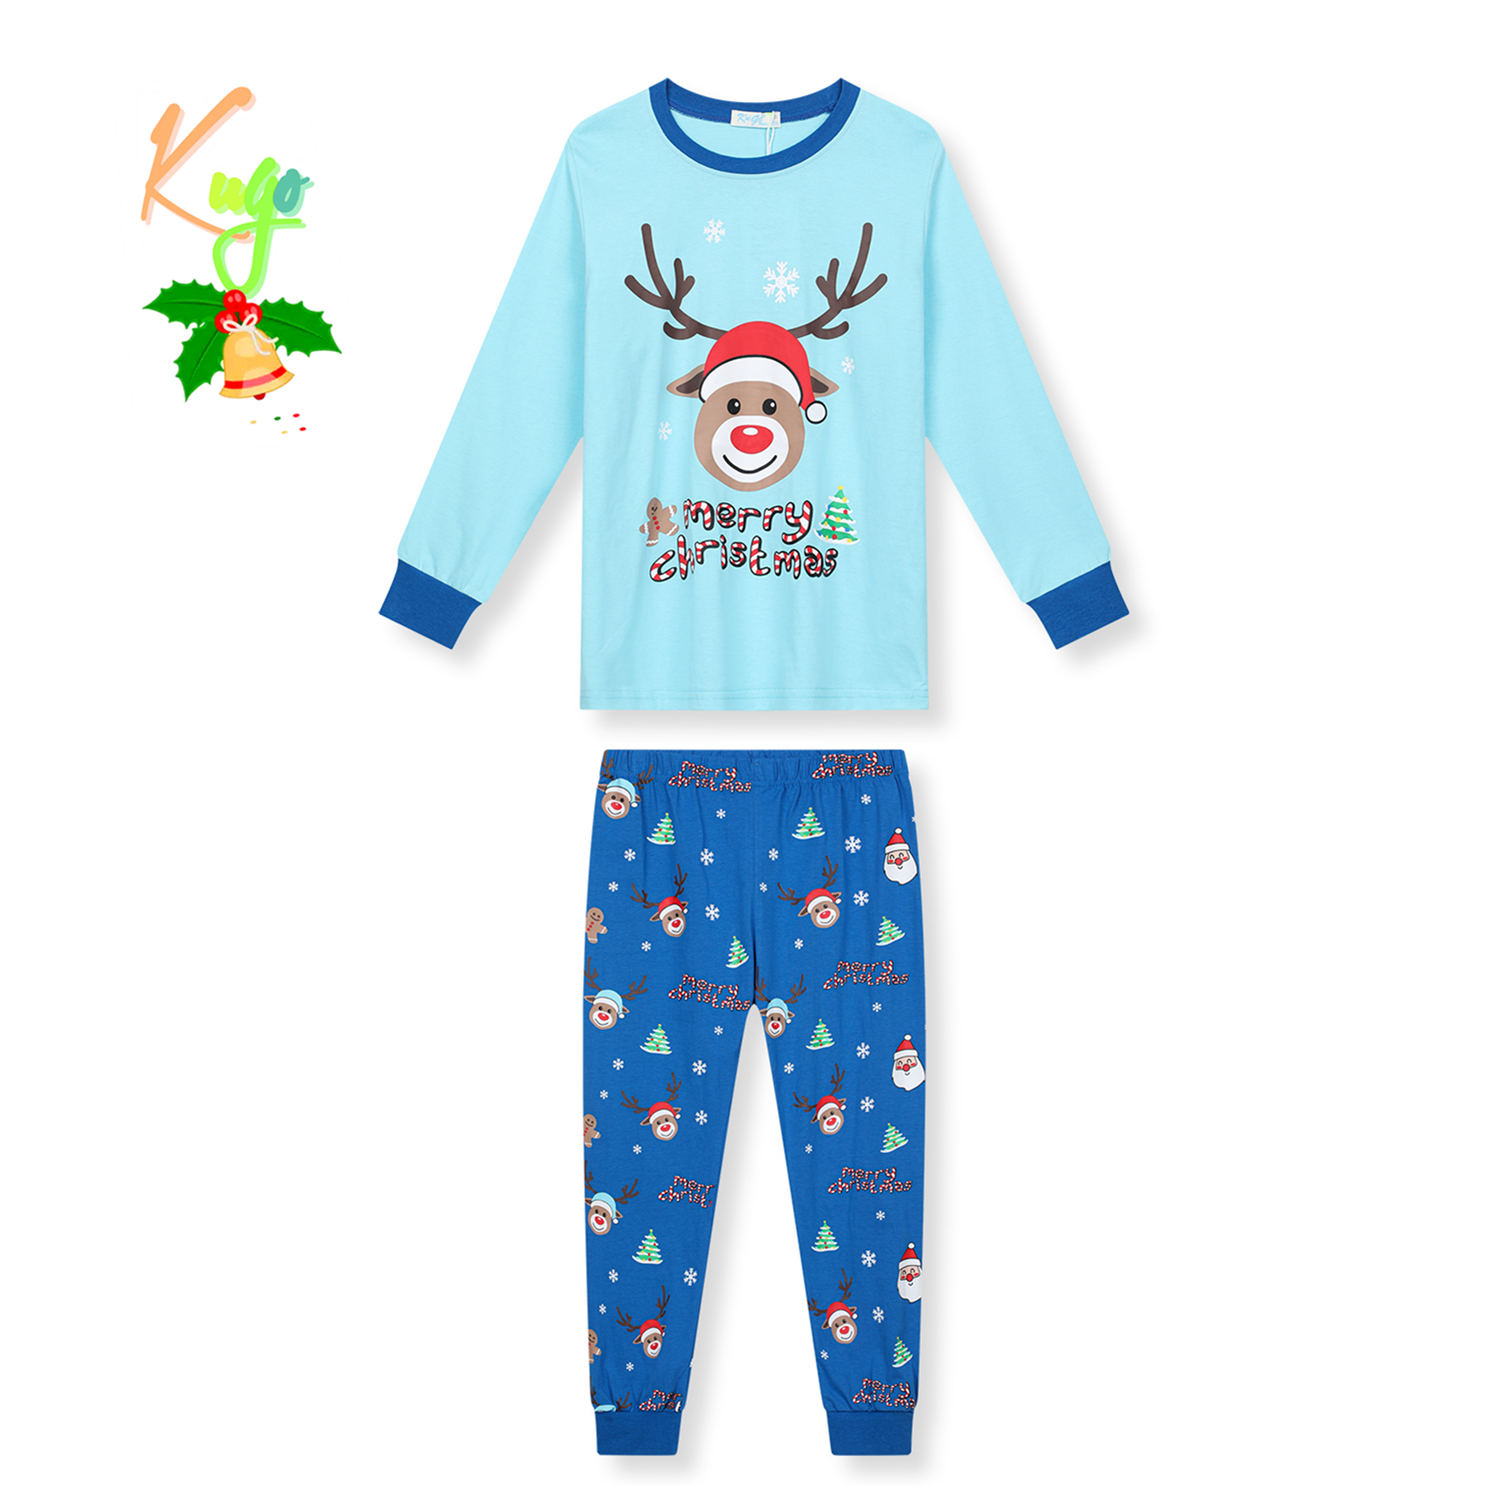 Chlapecké pyžamo - KUGO MP3837, světle tyrkysová / modré kalhoty Barva: Tyrkysová, Velikost: 152